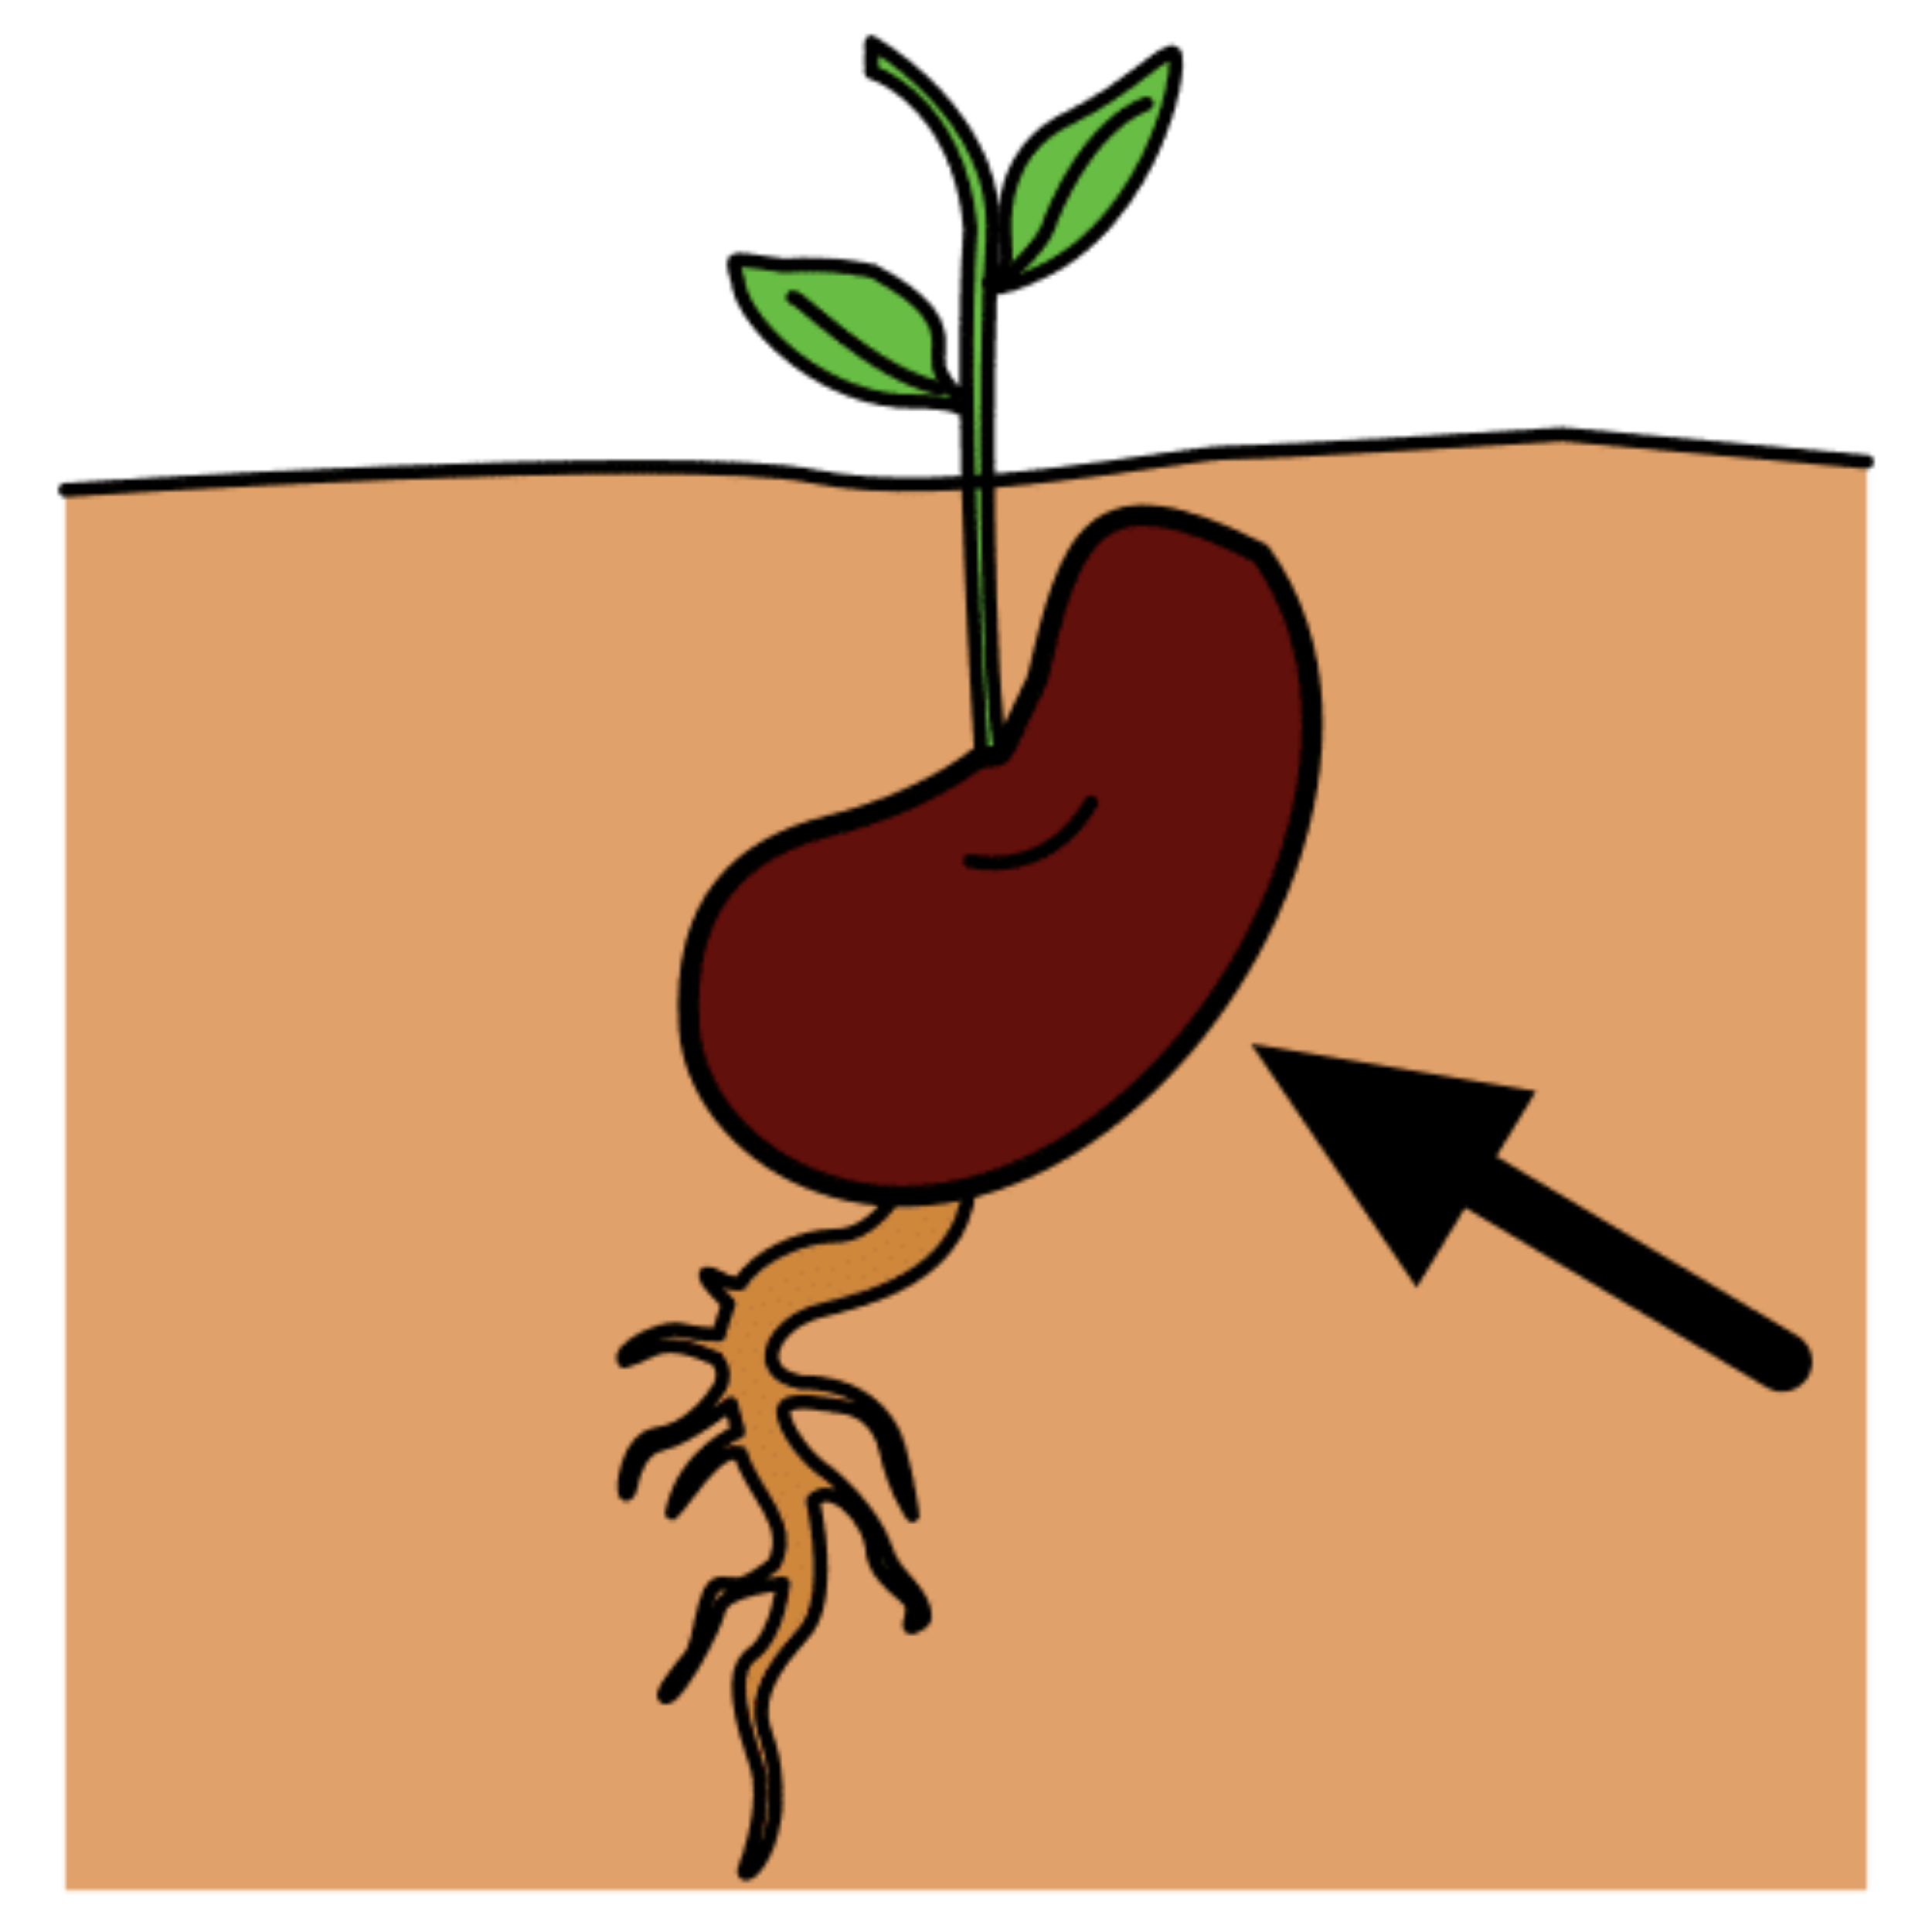 La imagen muestra una semilla que ha germinado.